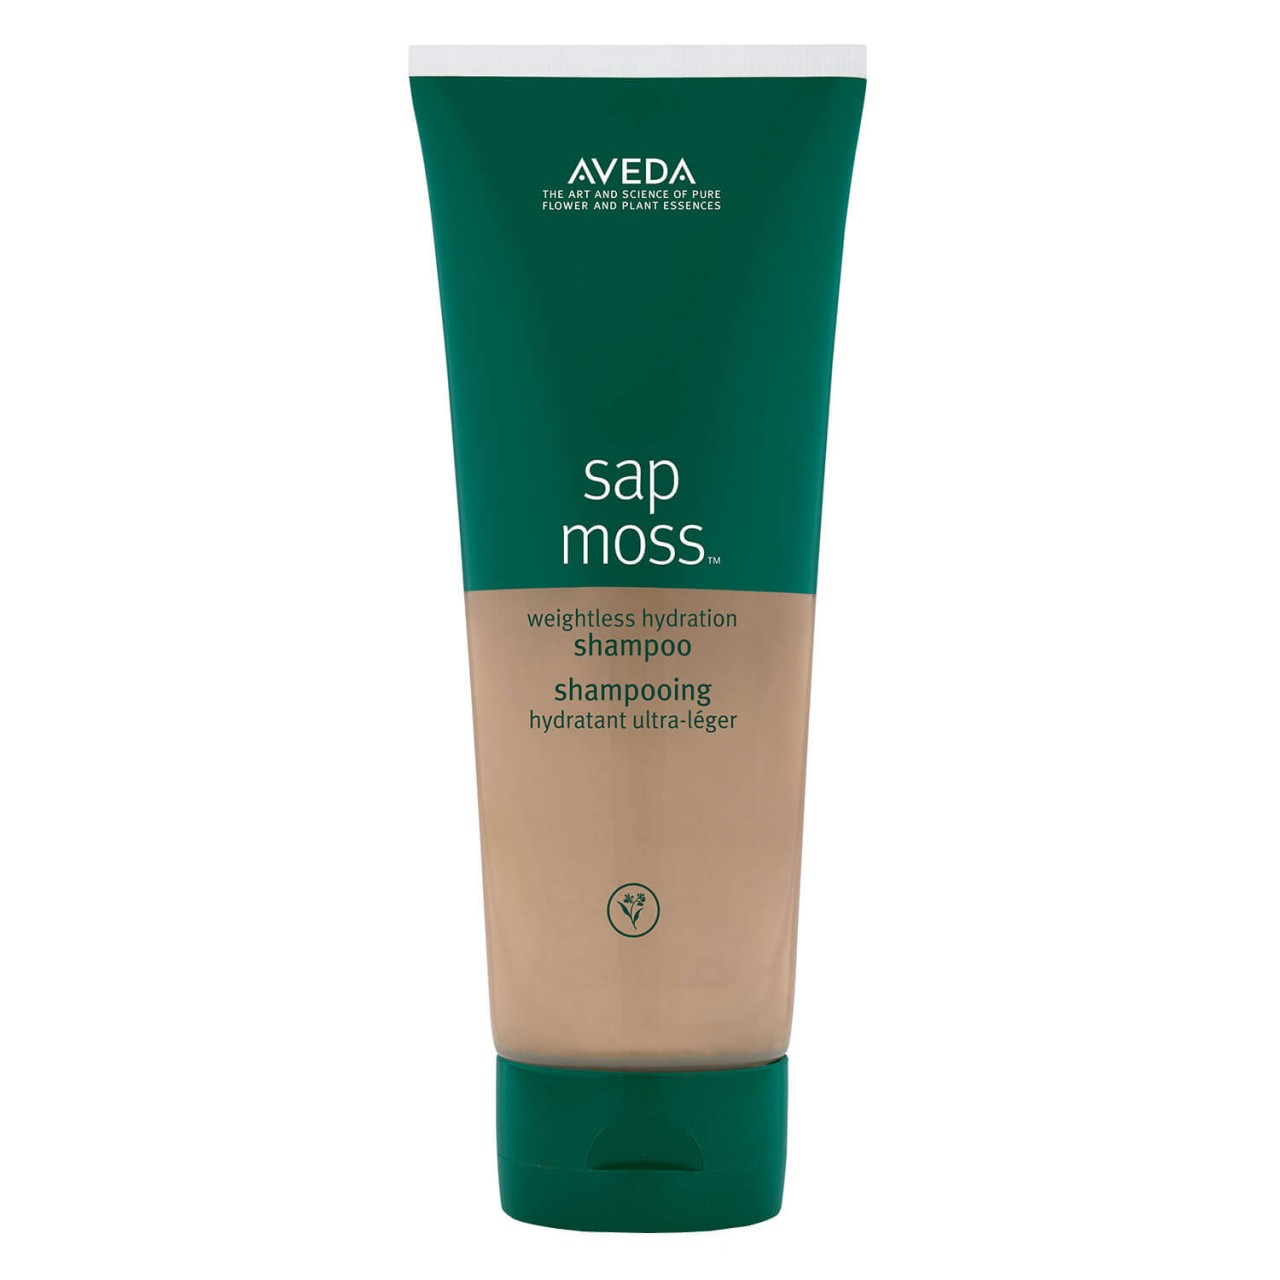 sap moss - weightless hydration shampoo von Aveda